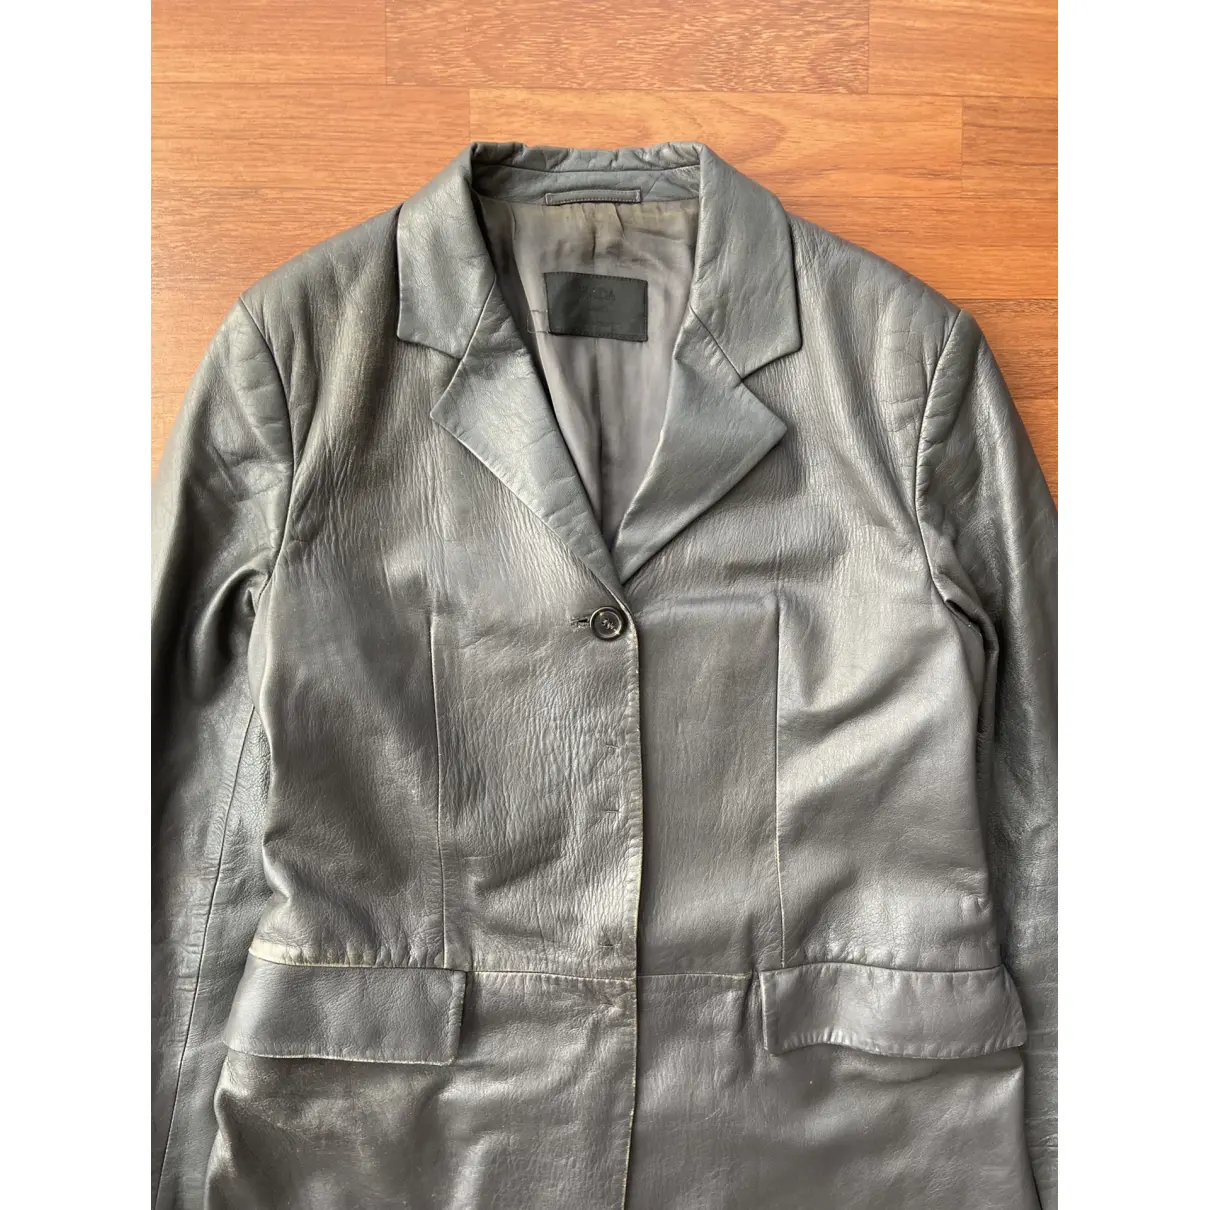 Buy Prada Leather coat online - Vintage